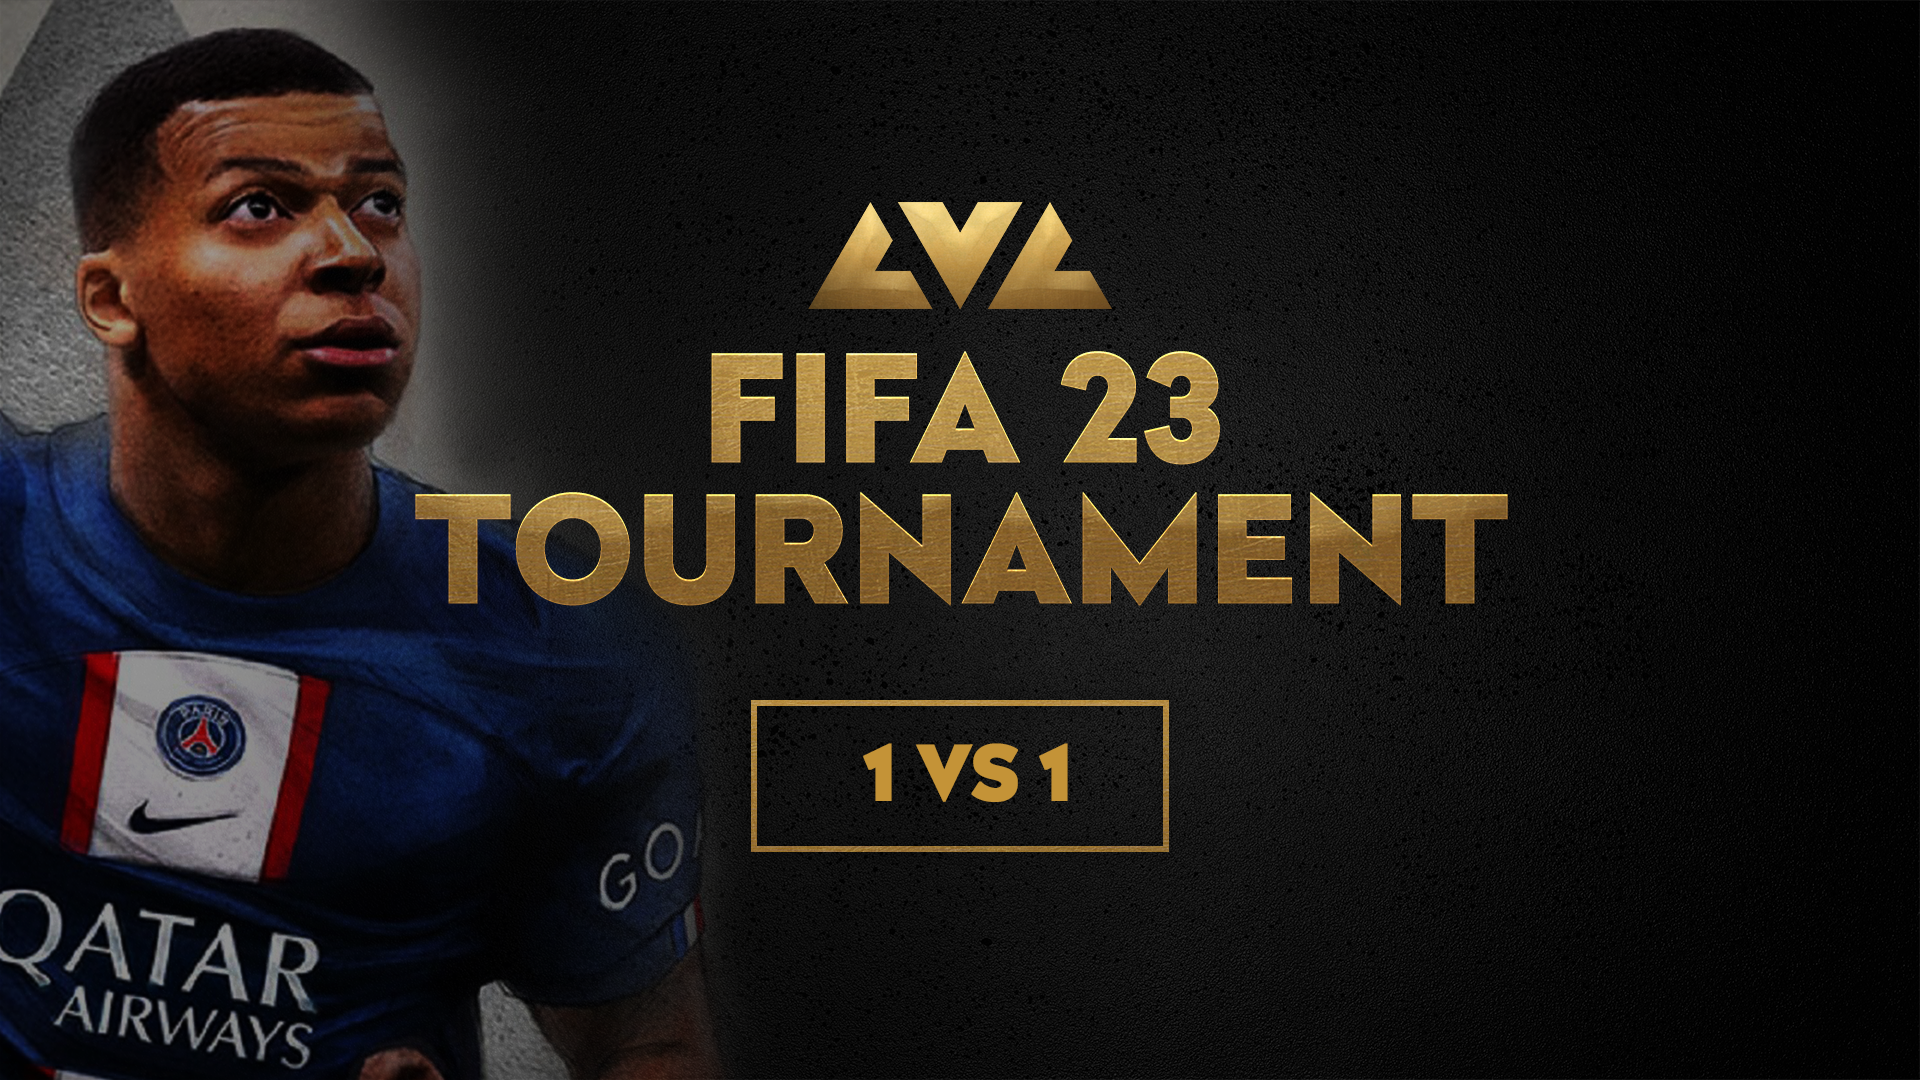 FIFA 23 tournament 1 vs.1 picture